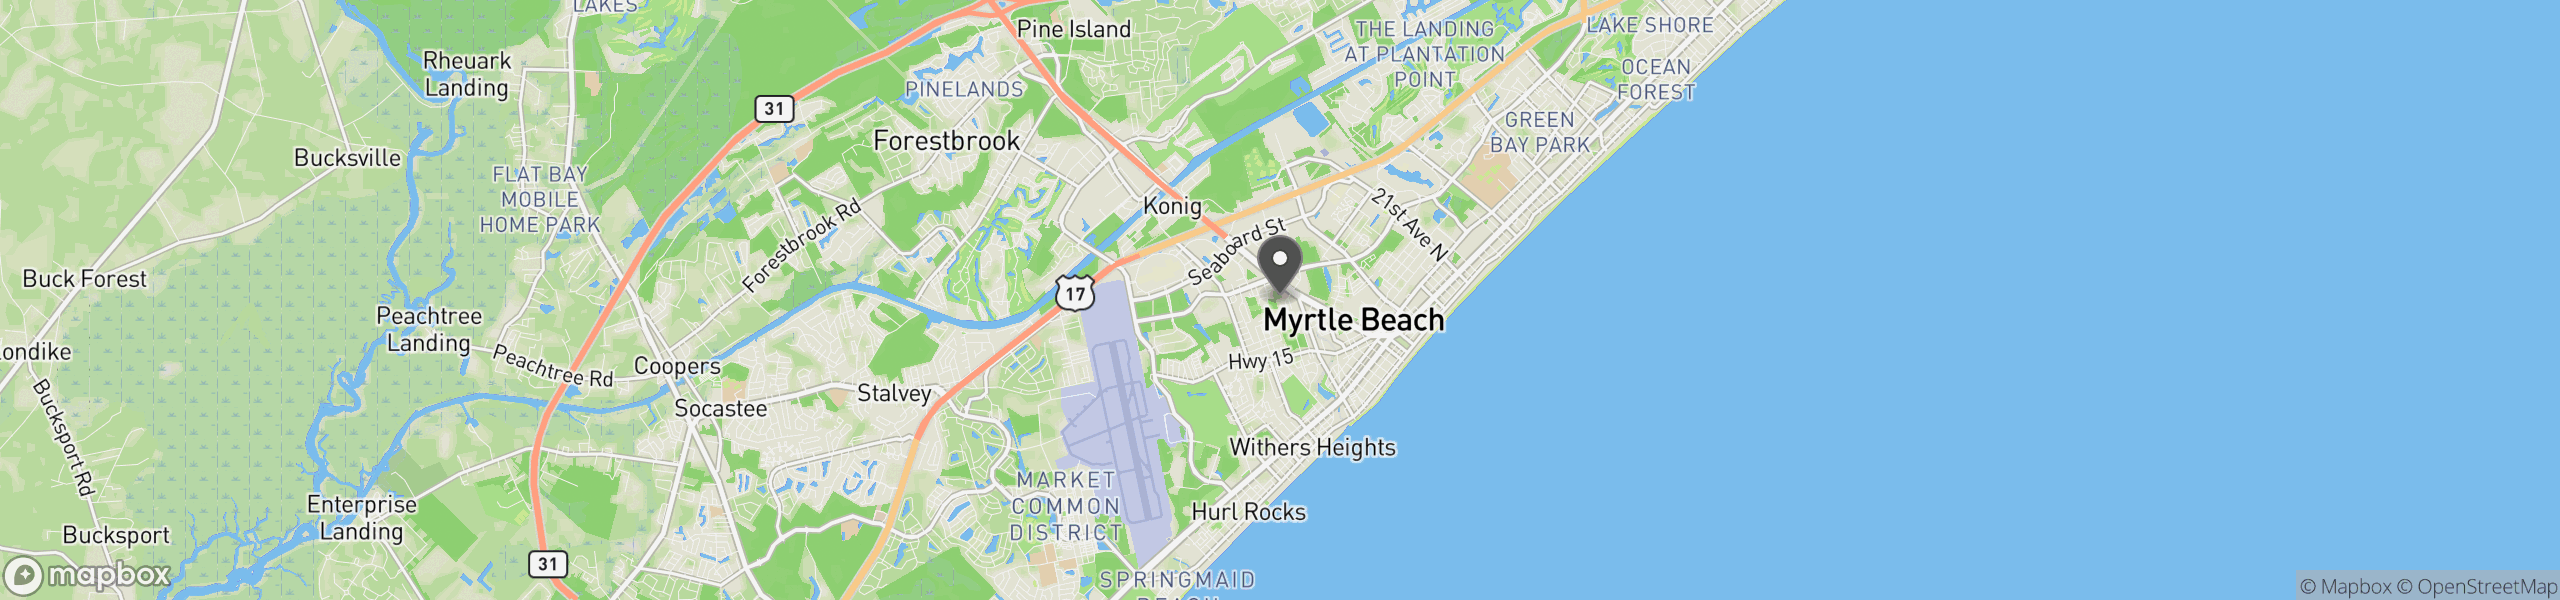 Myrtle Beach, SC 29577